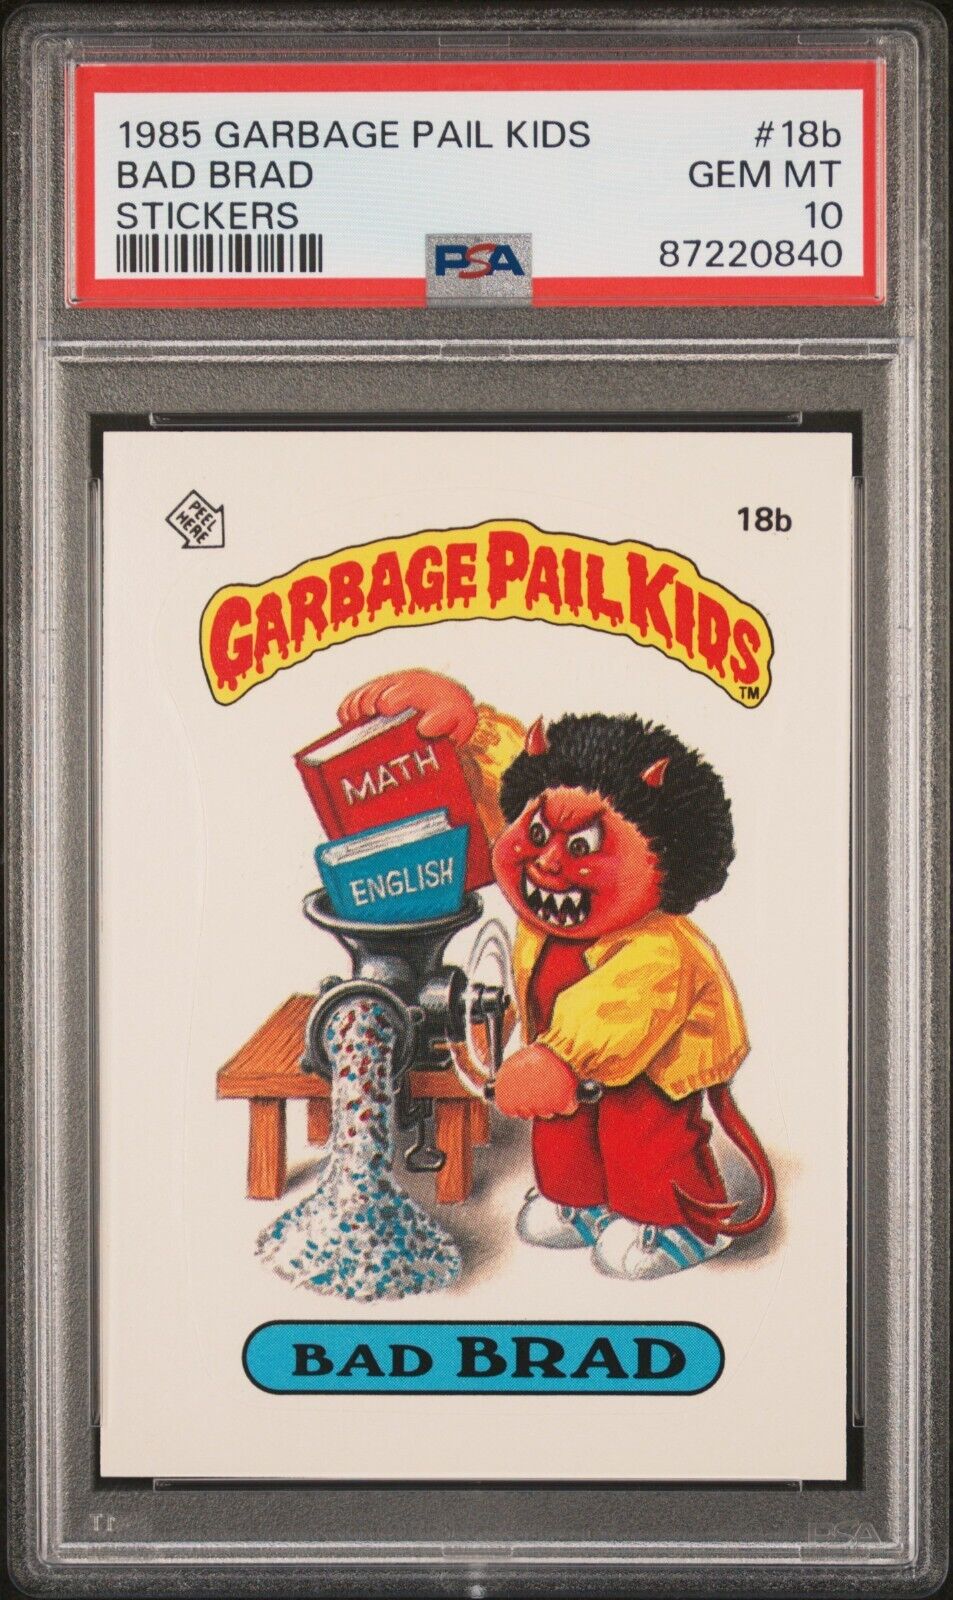 1985 Topps OS1 Garbage Pail Kids Series 1 Bad Brad 18b Matte Card PSA 10 GEM MT